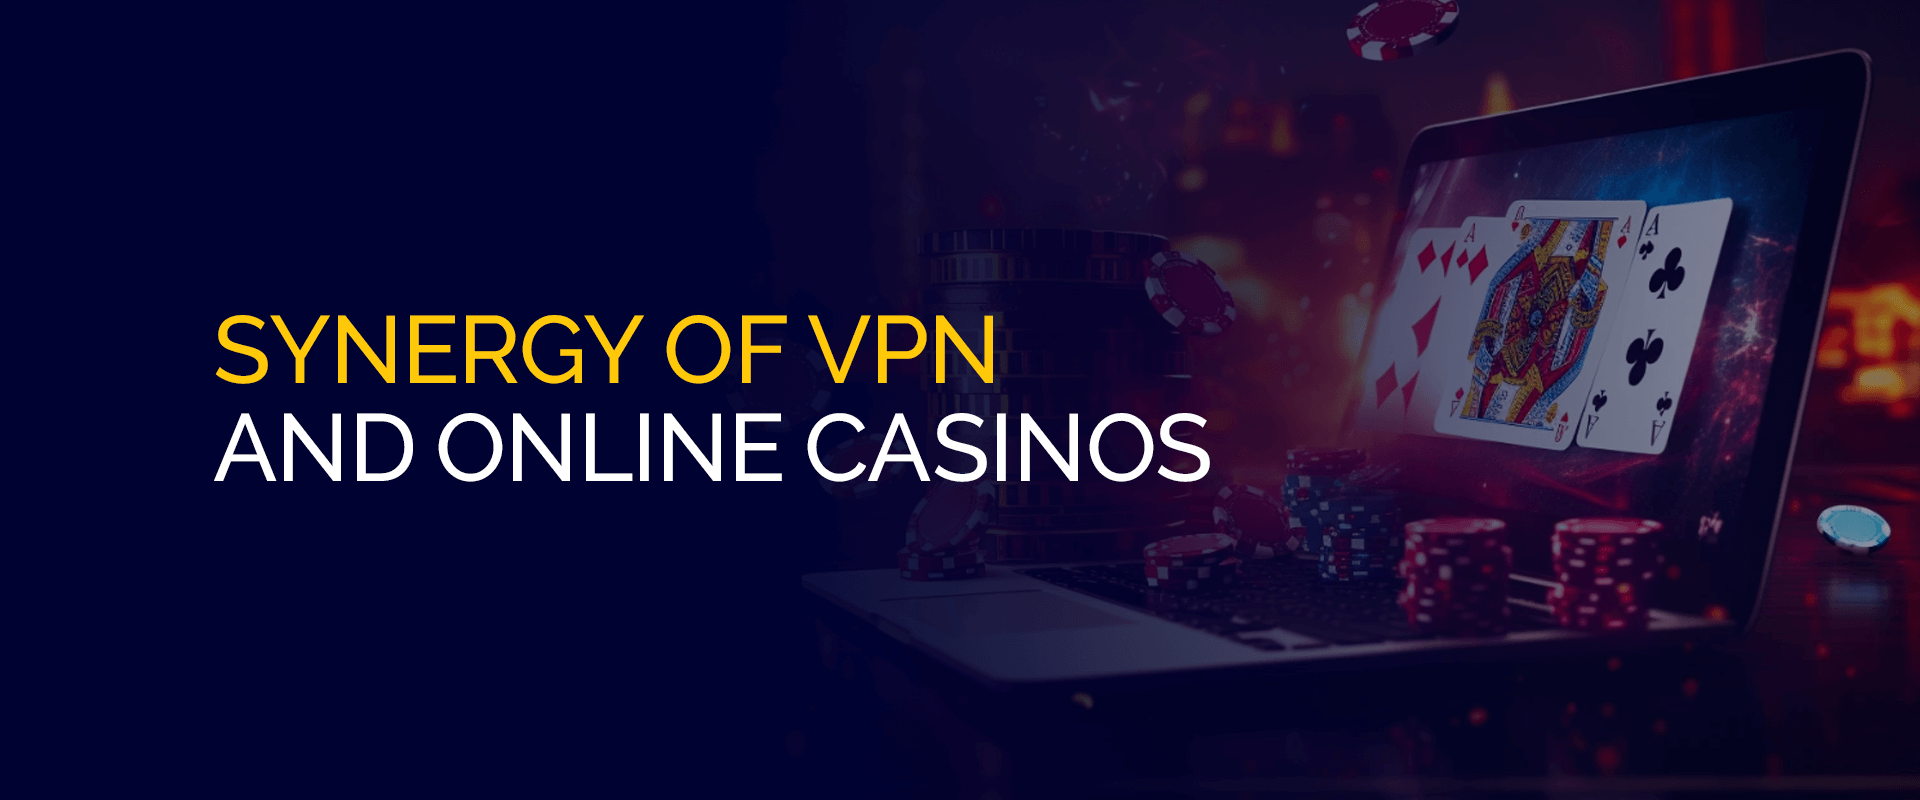 Sinergia de VPN y casinos en línea